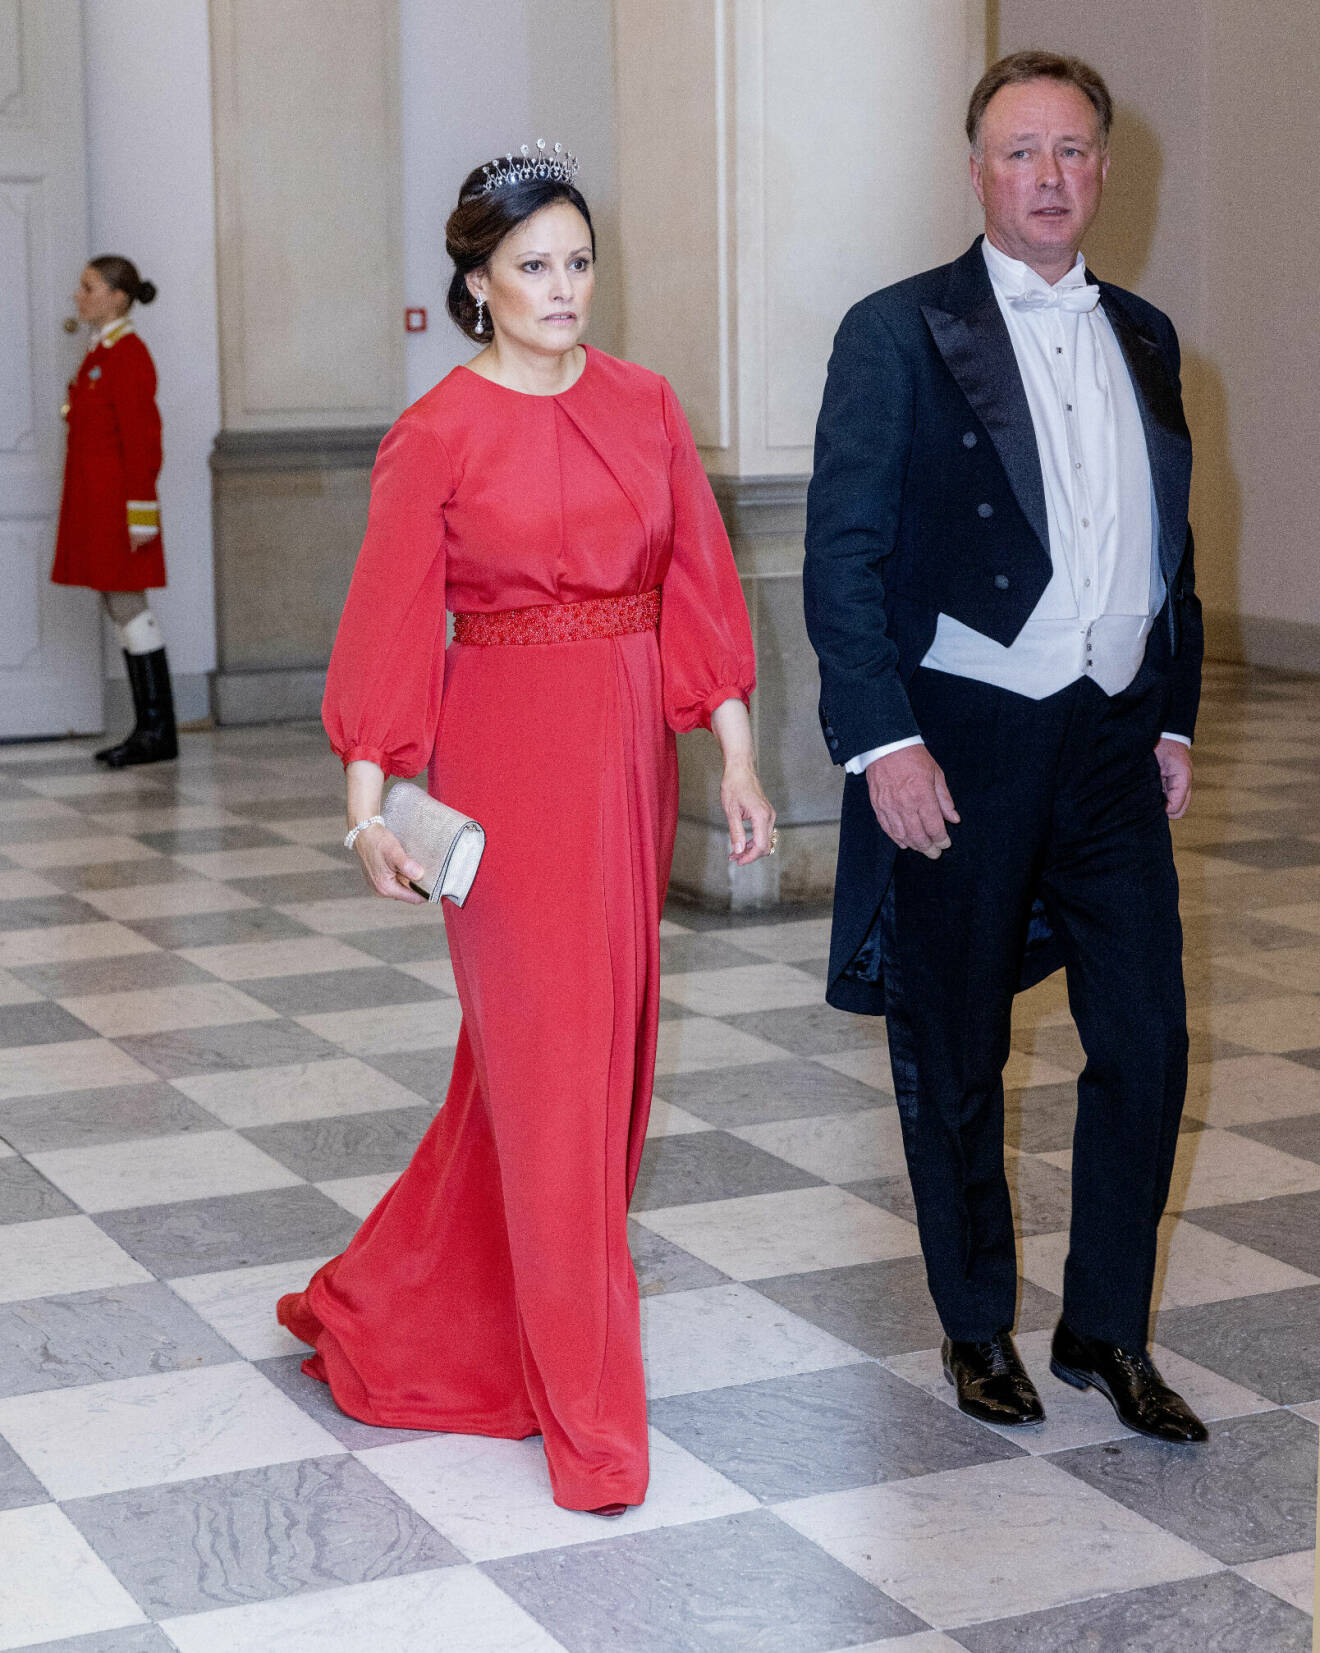 Prinsessan Carina i rött med sin man prins Gustav